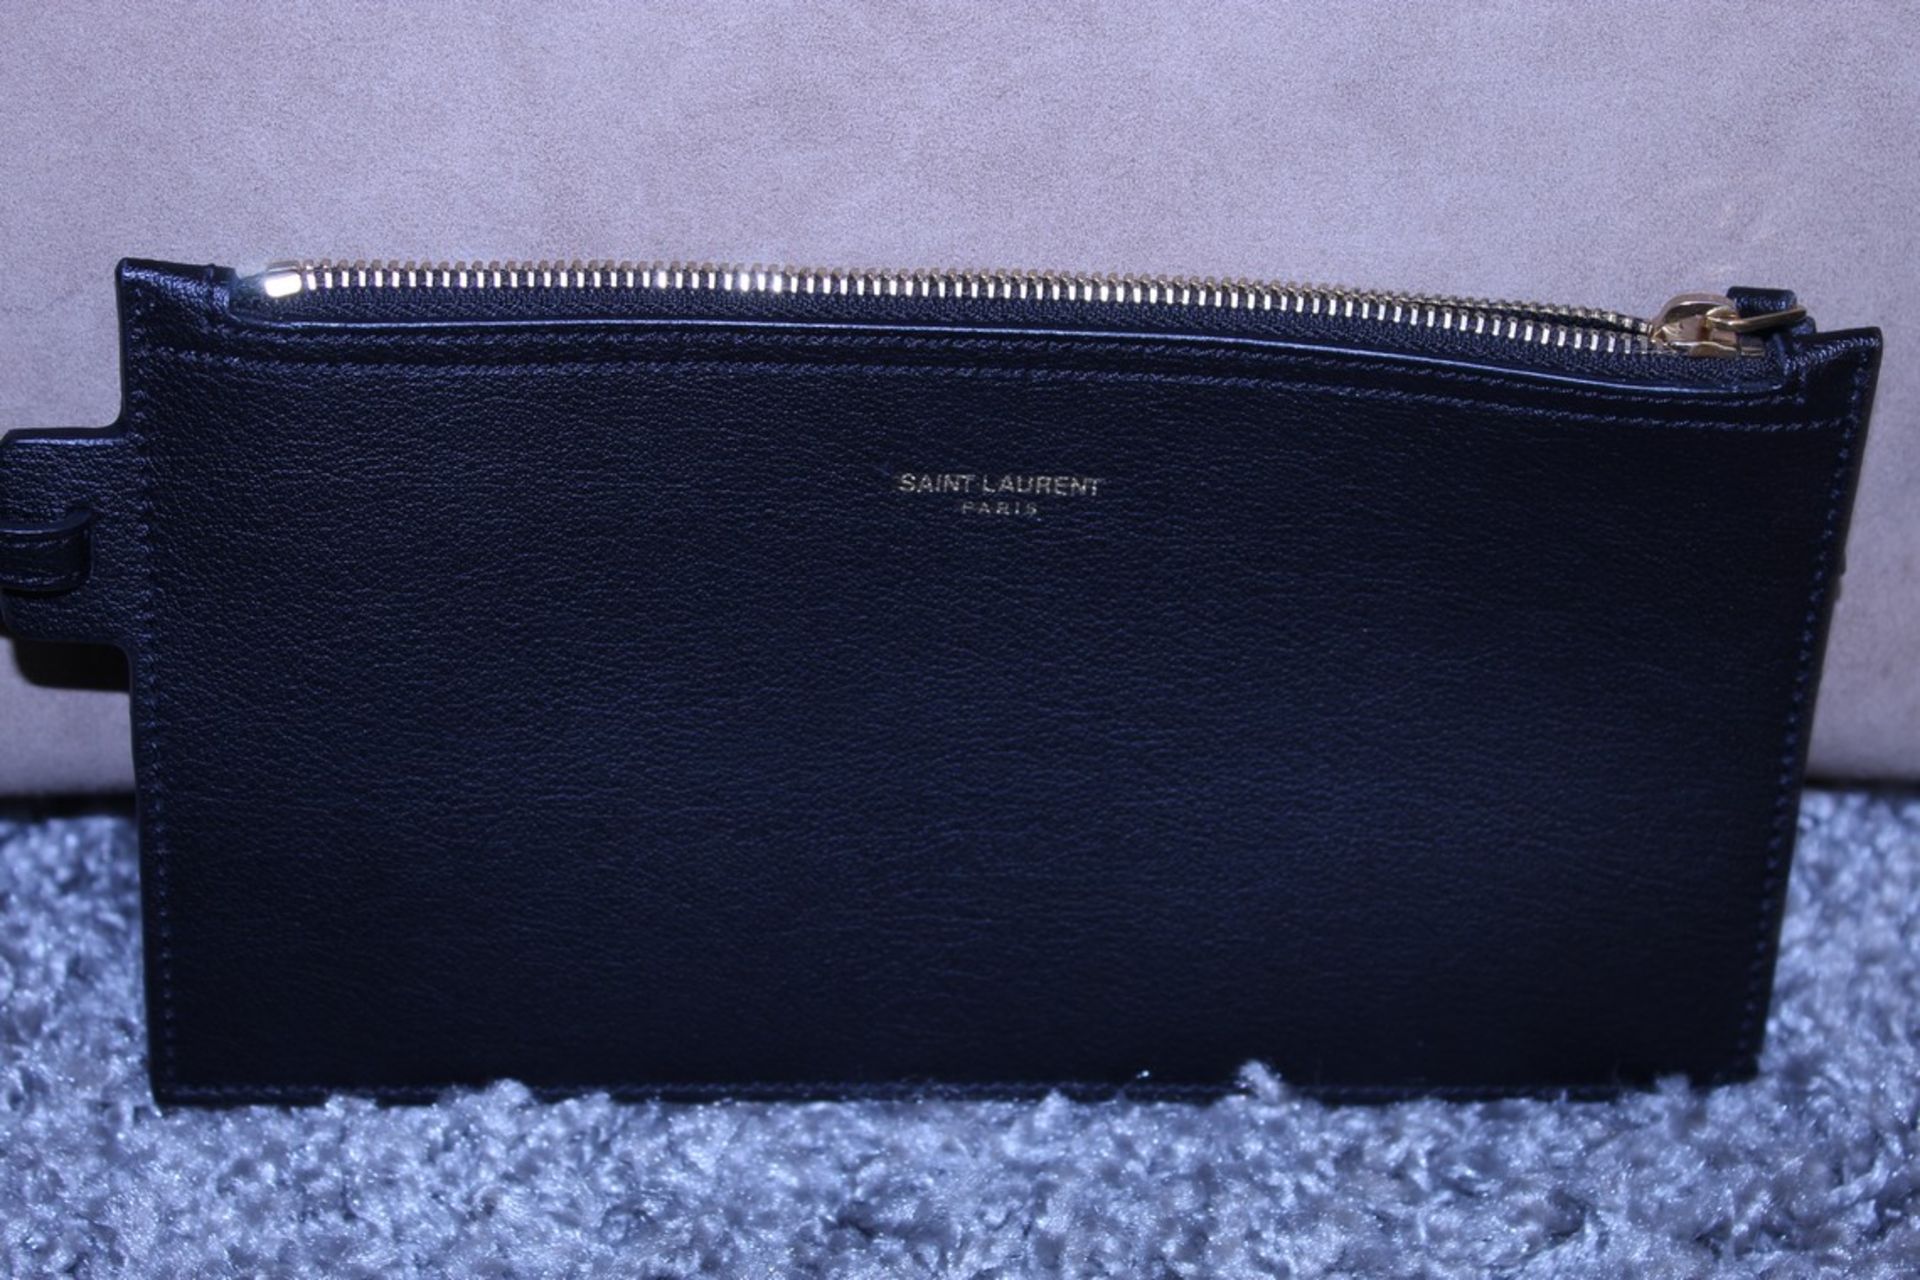 Rrp £1,490 Yves St-Lauren Medium Tassle Tote Bag, Dark Beige/Black Suede Leather, Black Leather - Image 2 of 5